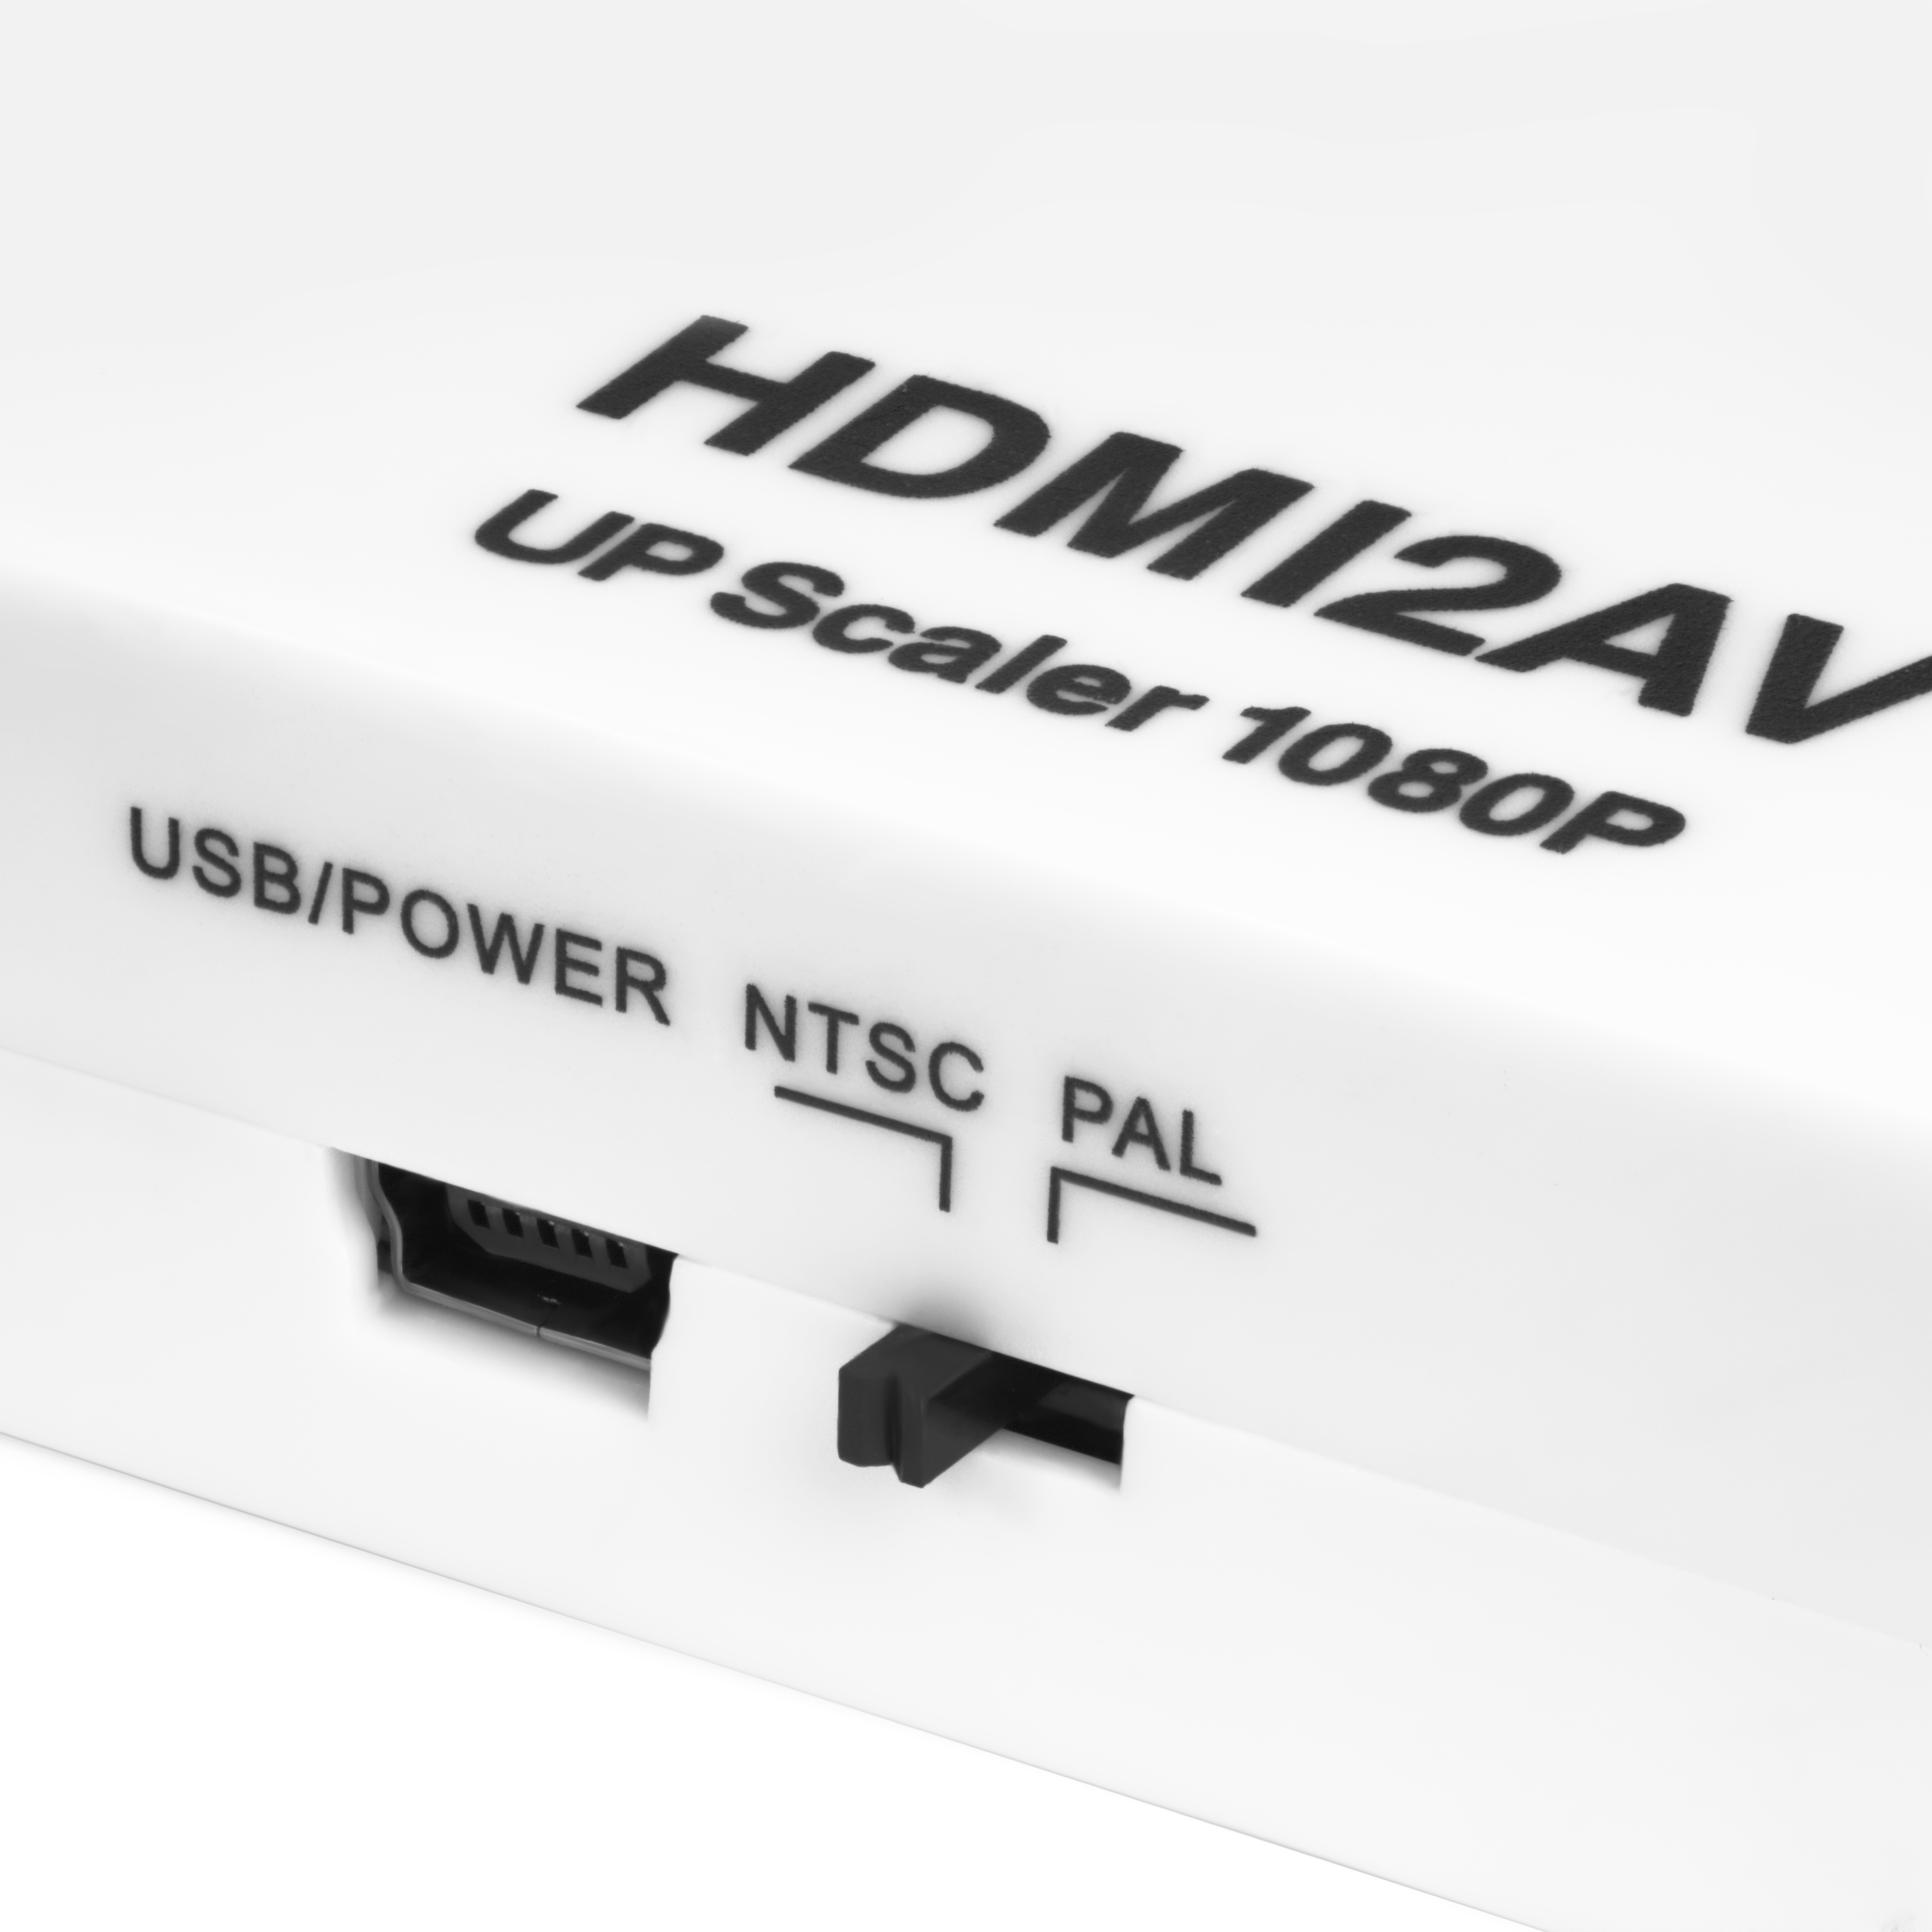 Преобразователь сигнала конвертер HDMI 1.3 в AV PAL NTSC 1080p